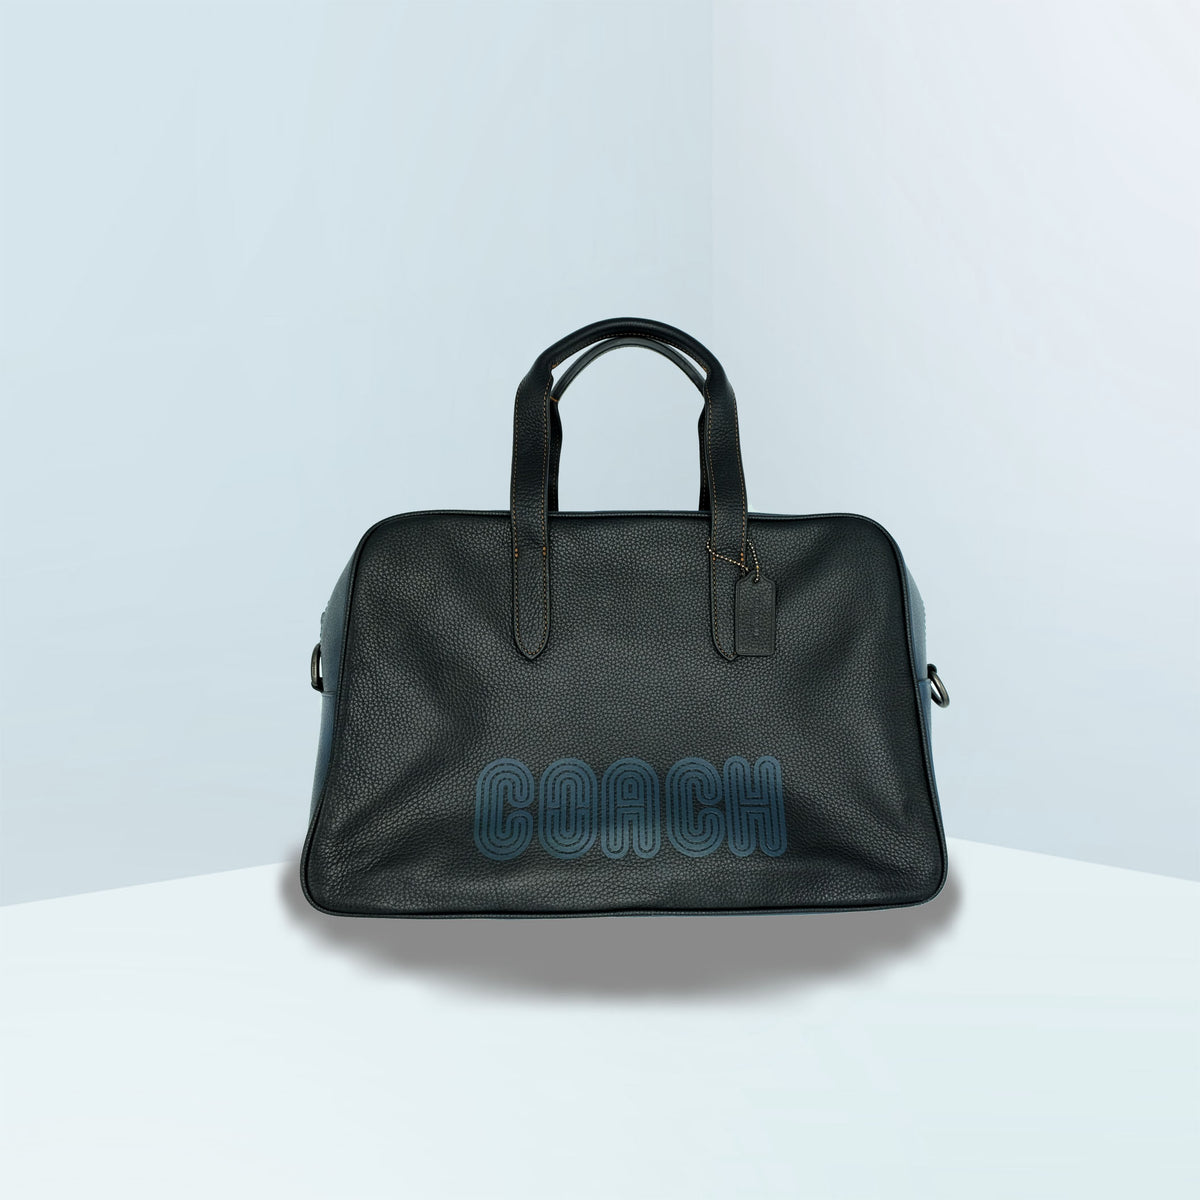 Metropolitan Soft Carryall With Coach Patch Satchel Bag – A la Mode Bags